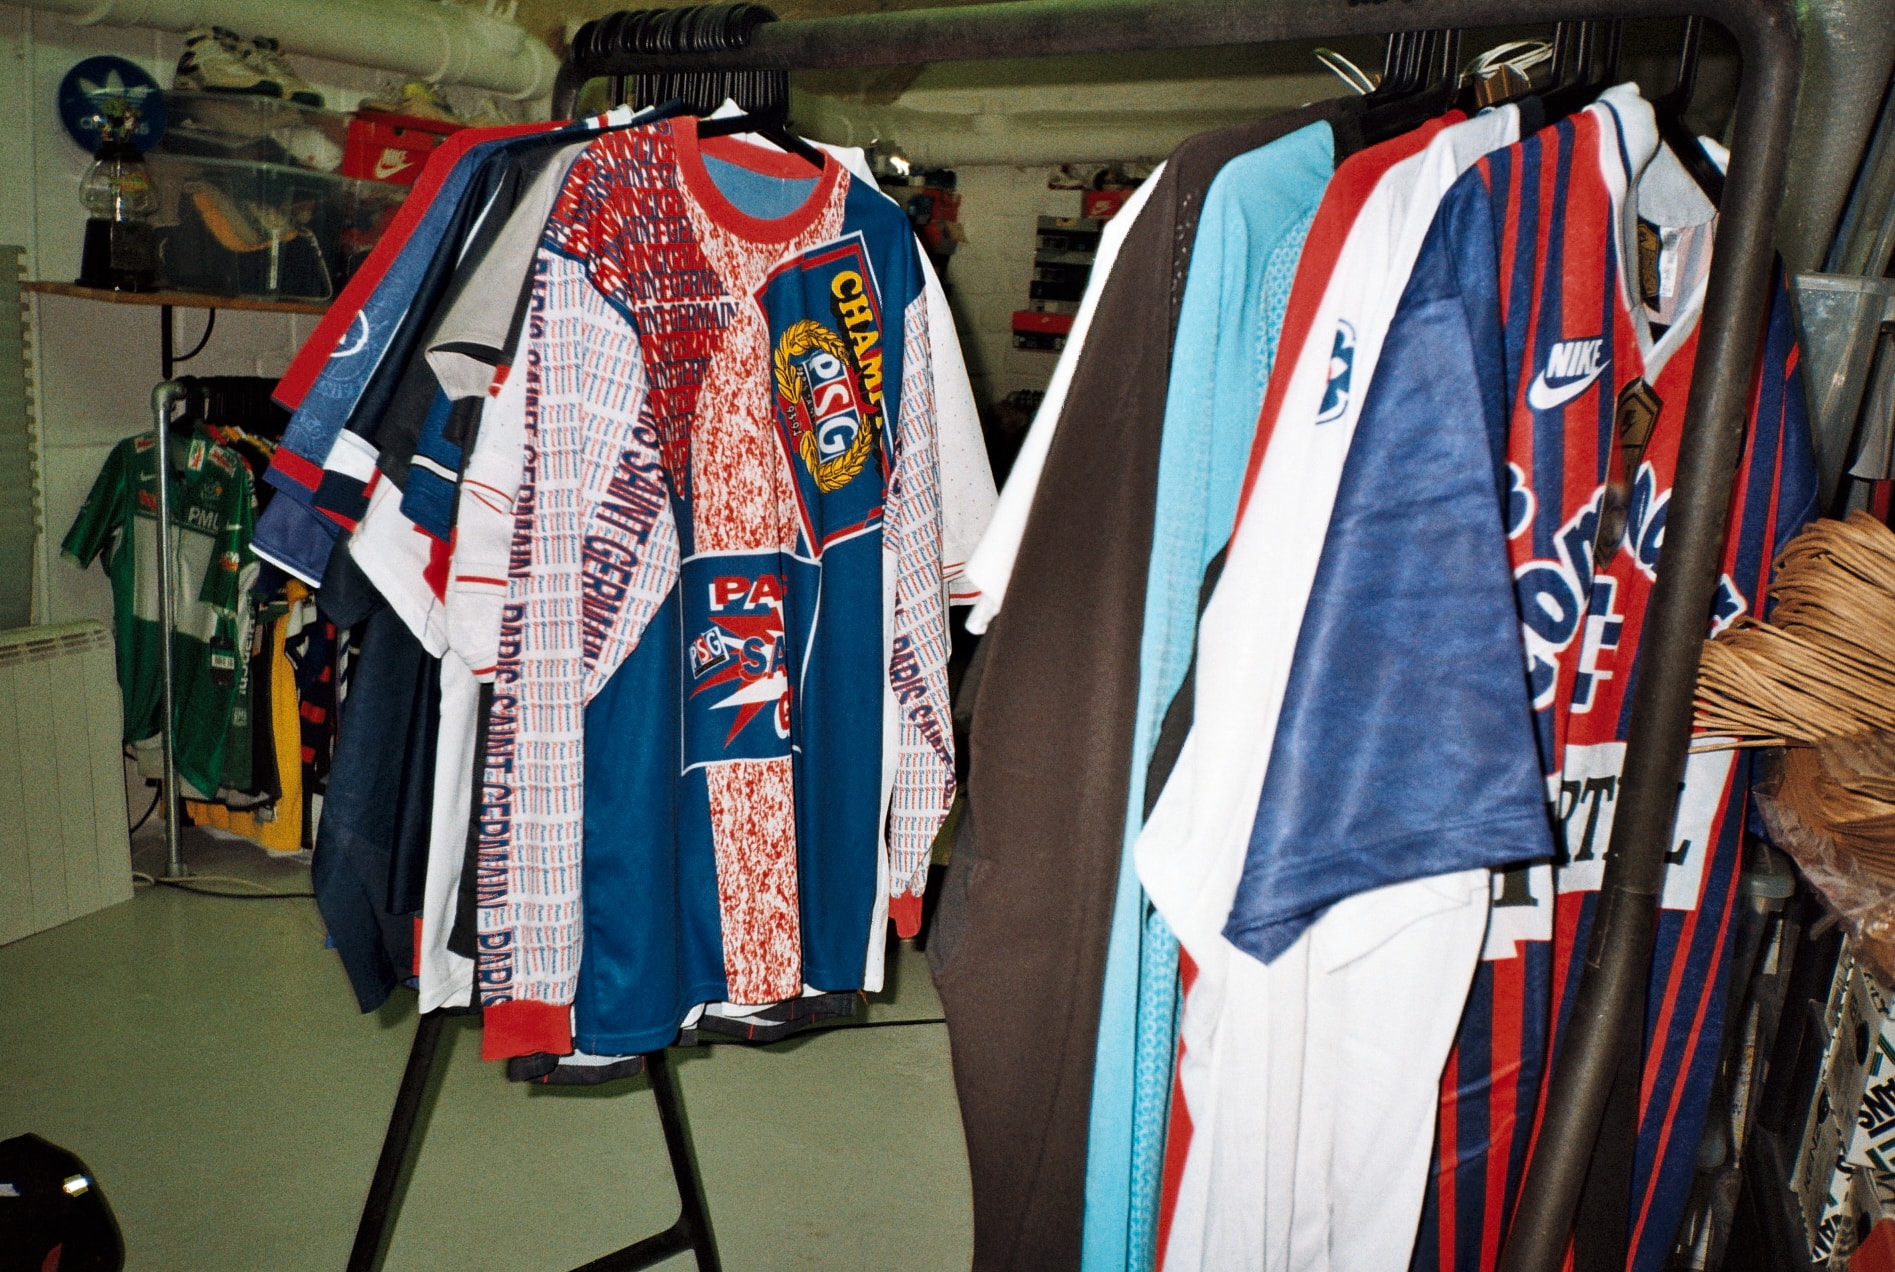 PSG : vente exclusive de maillots vintage programmée chez LineUp